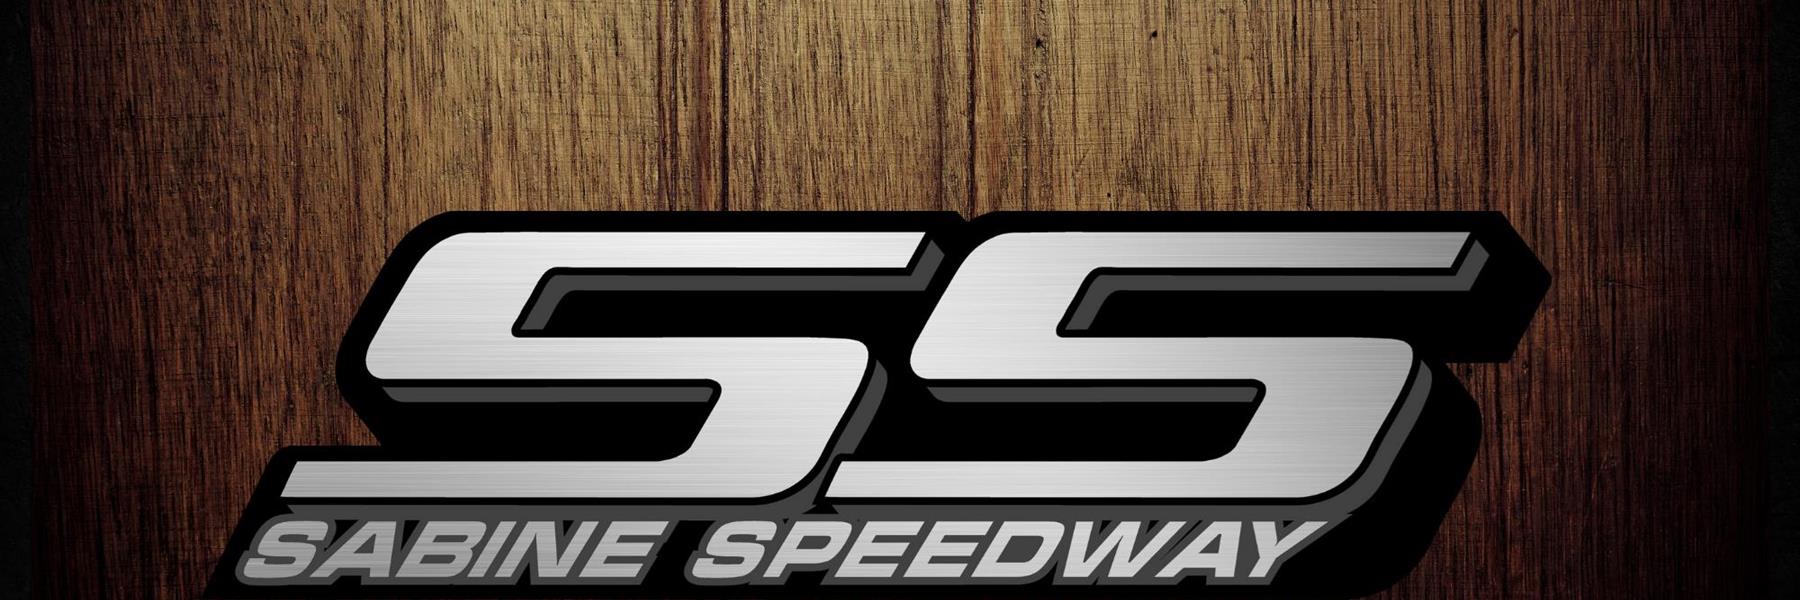 2/26/2022 - Sabine Speedway